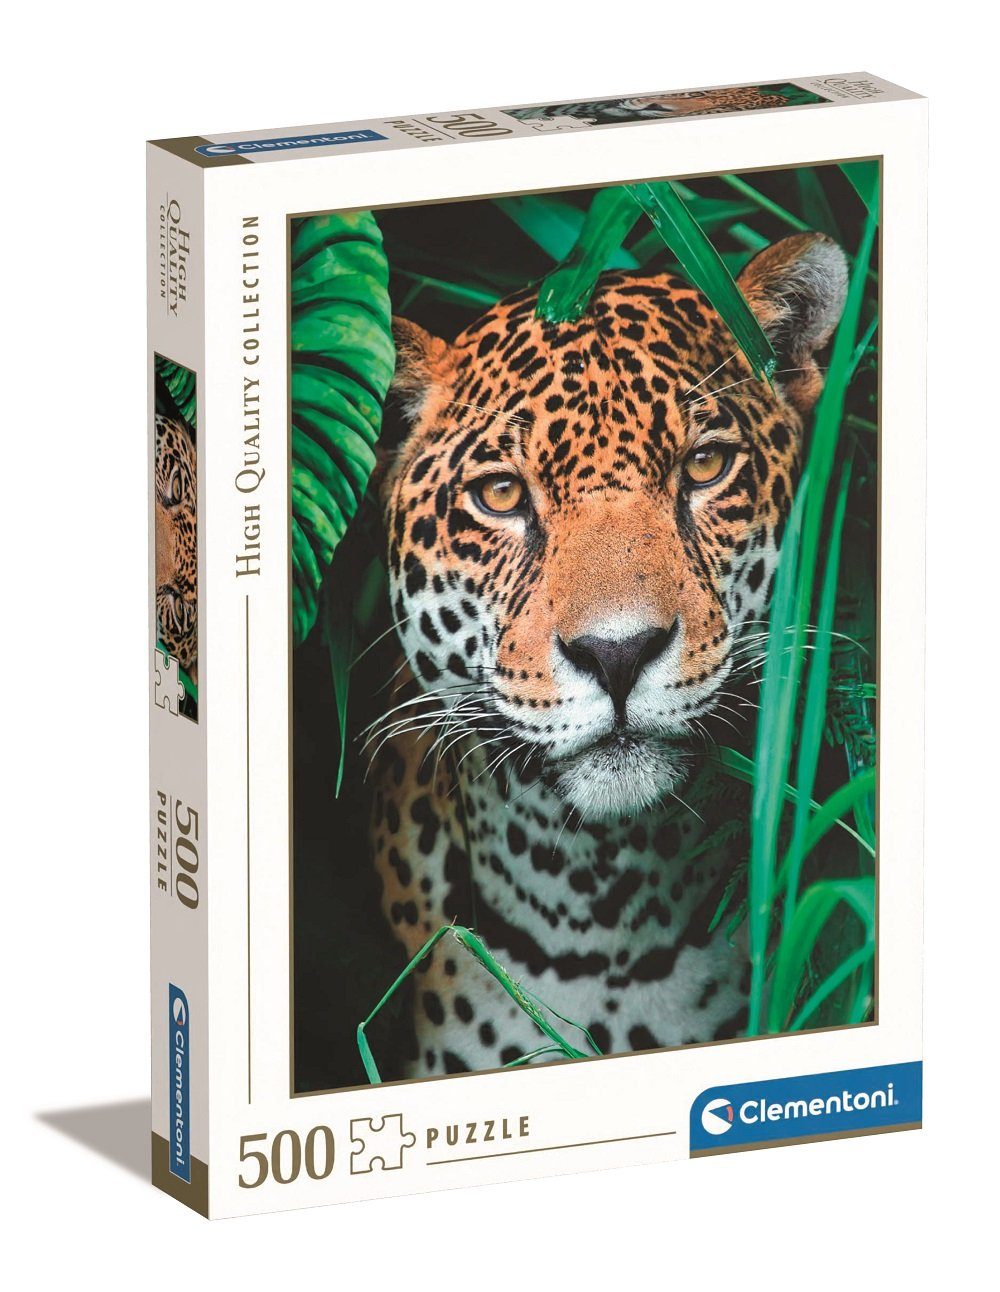 Clementoni® Puzzle Clementoni Jaguar im Teile 500 Puzzle, Dschungel 500 Puzzleteile